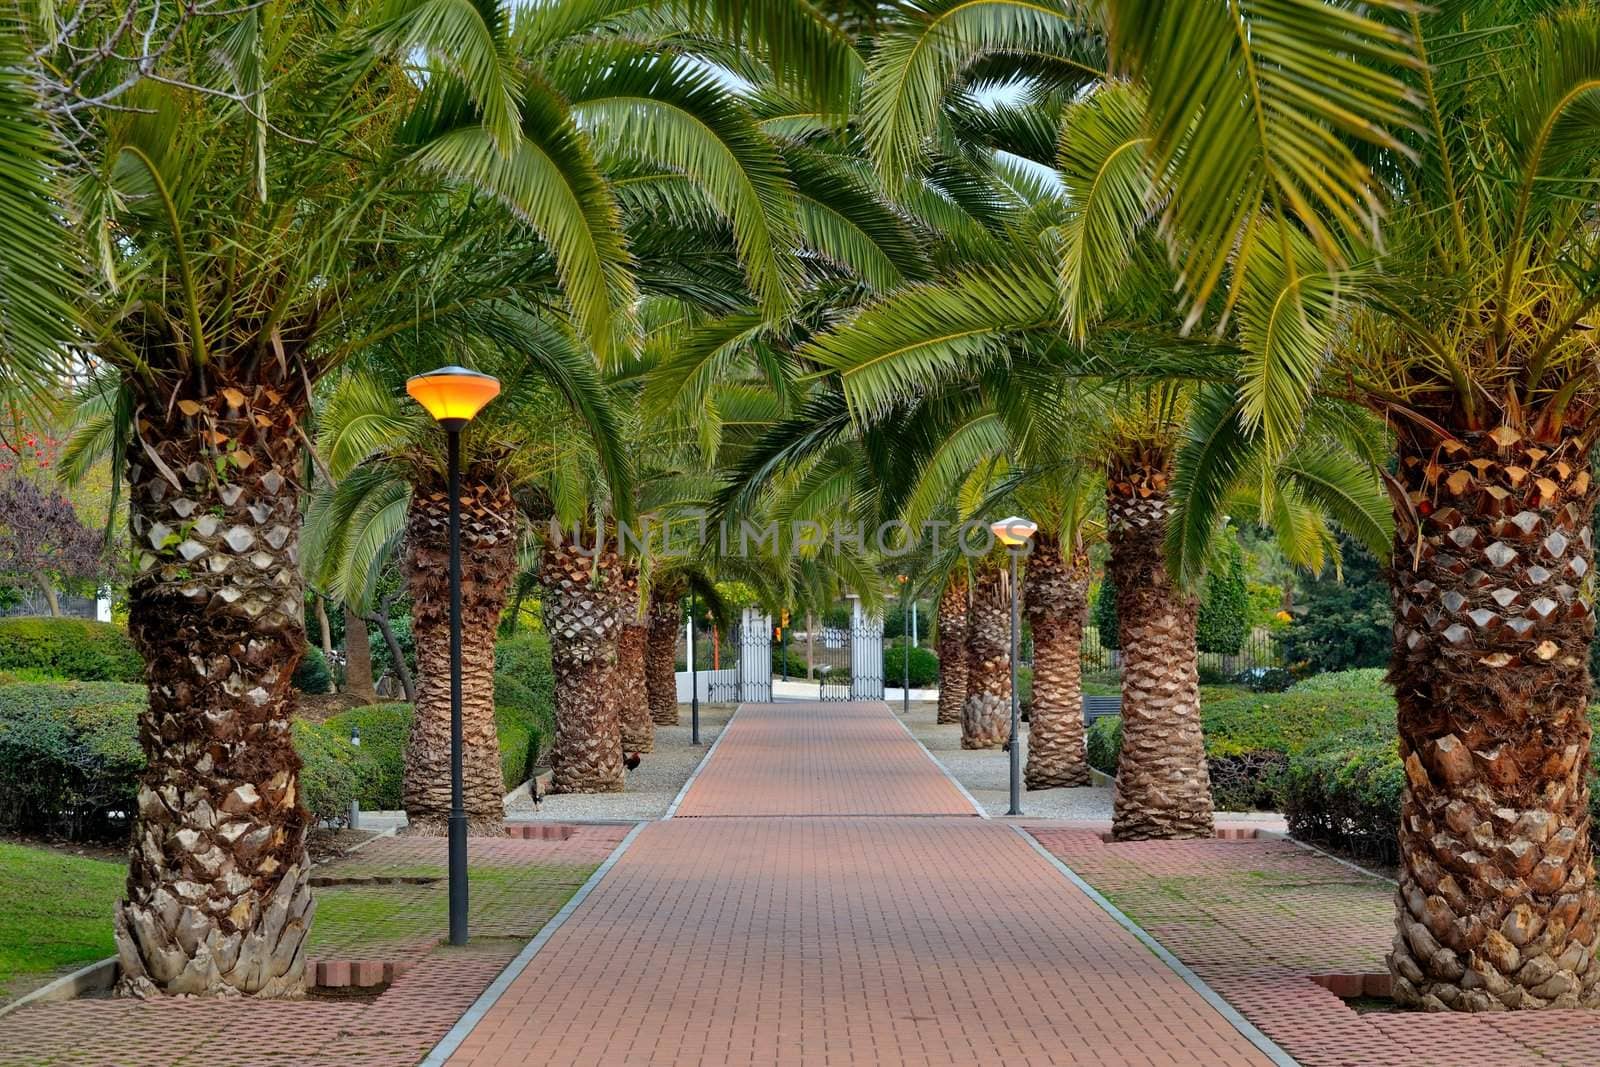 Park de las Palomas, located in Benalmadena